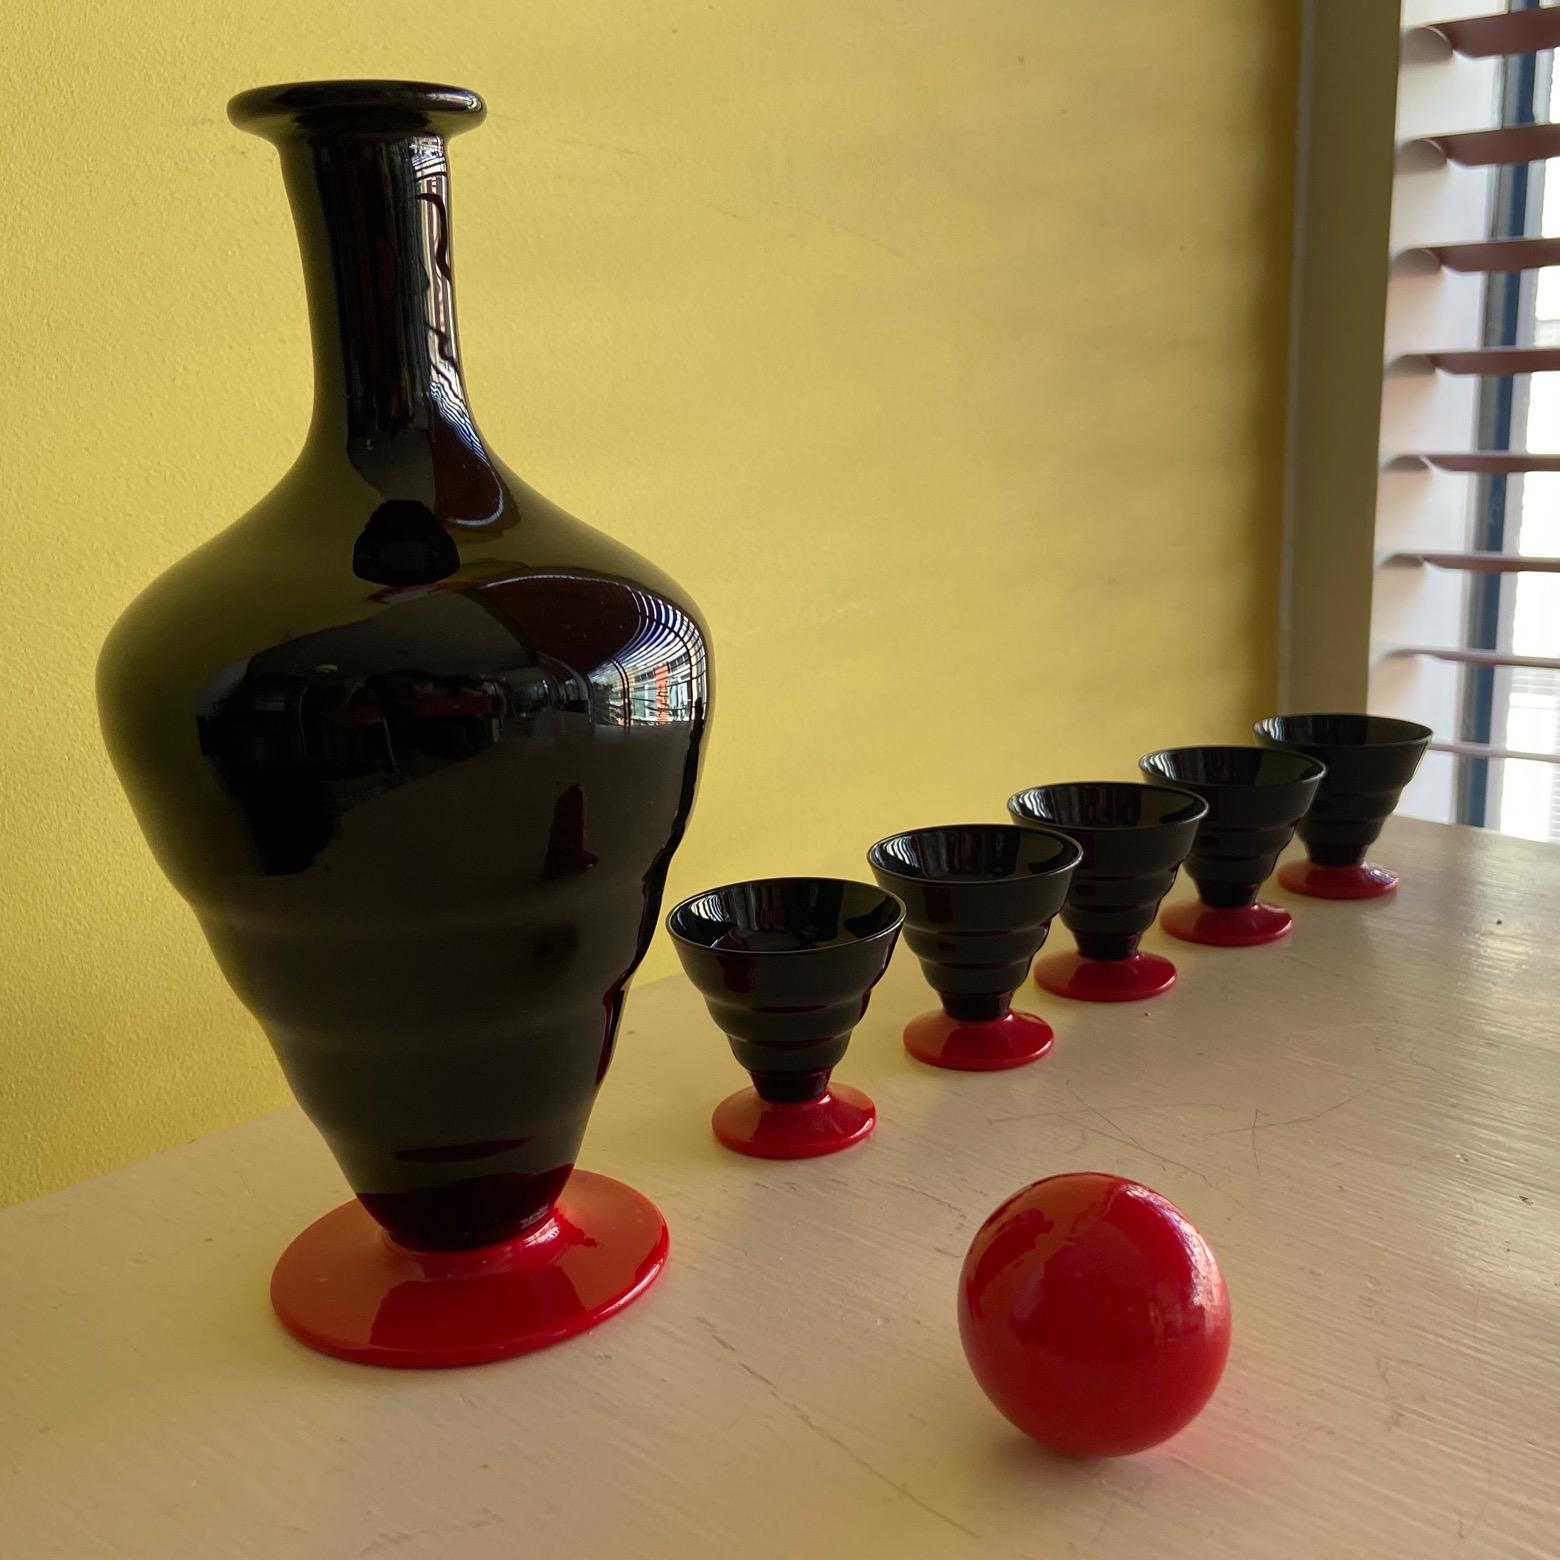 Service à liqueur Art déco en verre de Murano noir et rouge, carafe et 5 petits verres.
souvent attribuée à Venini, Murano.
carafe de 22 cm de haut
verres de 4,5 cm de haut.